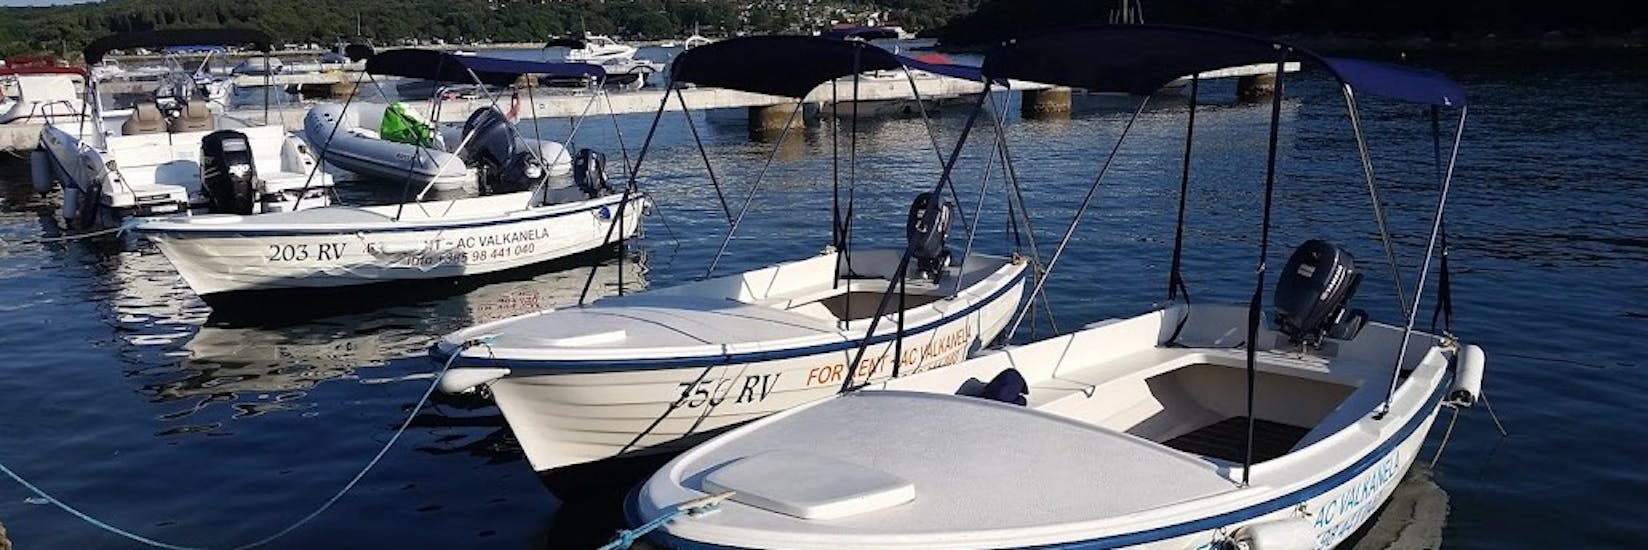 Immagine della barca da Vrsar noleggio barche (fino a massimo 6 persone) con Lux Rent A Boat & Jet Ski Vrsar.